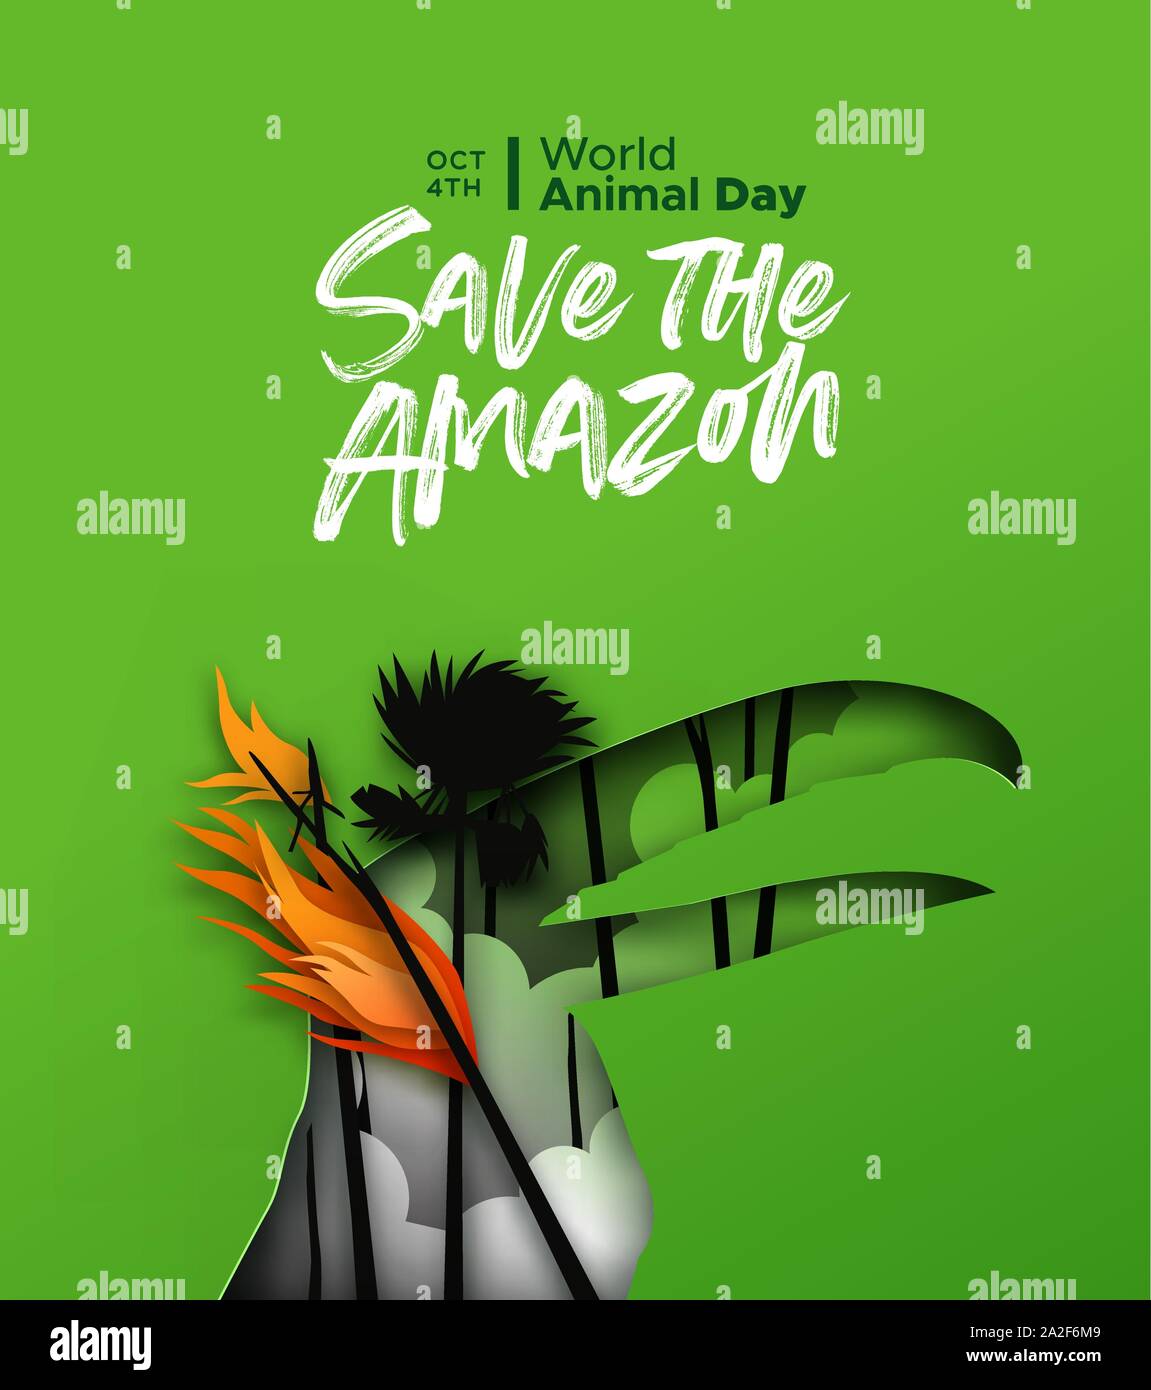 Speichern Sie die amazon papercut Illustration für Welt Tier Tag. Papier schneiden toucan Vogel mit Wald Feuer Landschaft in 3D-Ausschnitt Stil. Gefährdete Arten co Stock Vektor